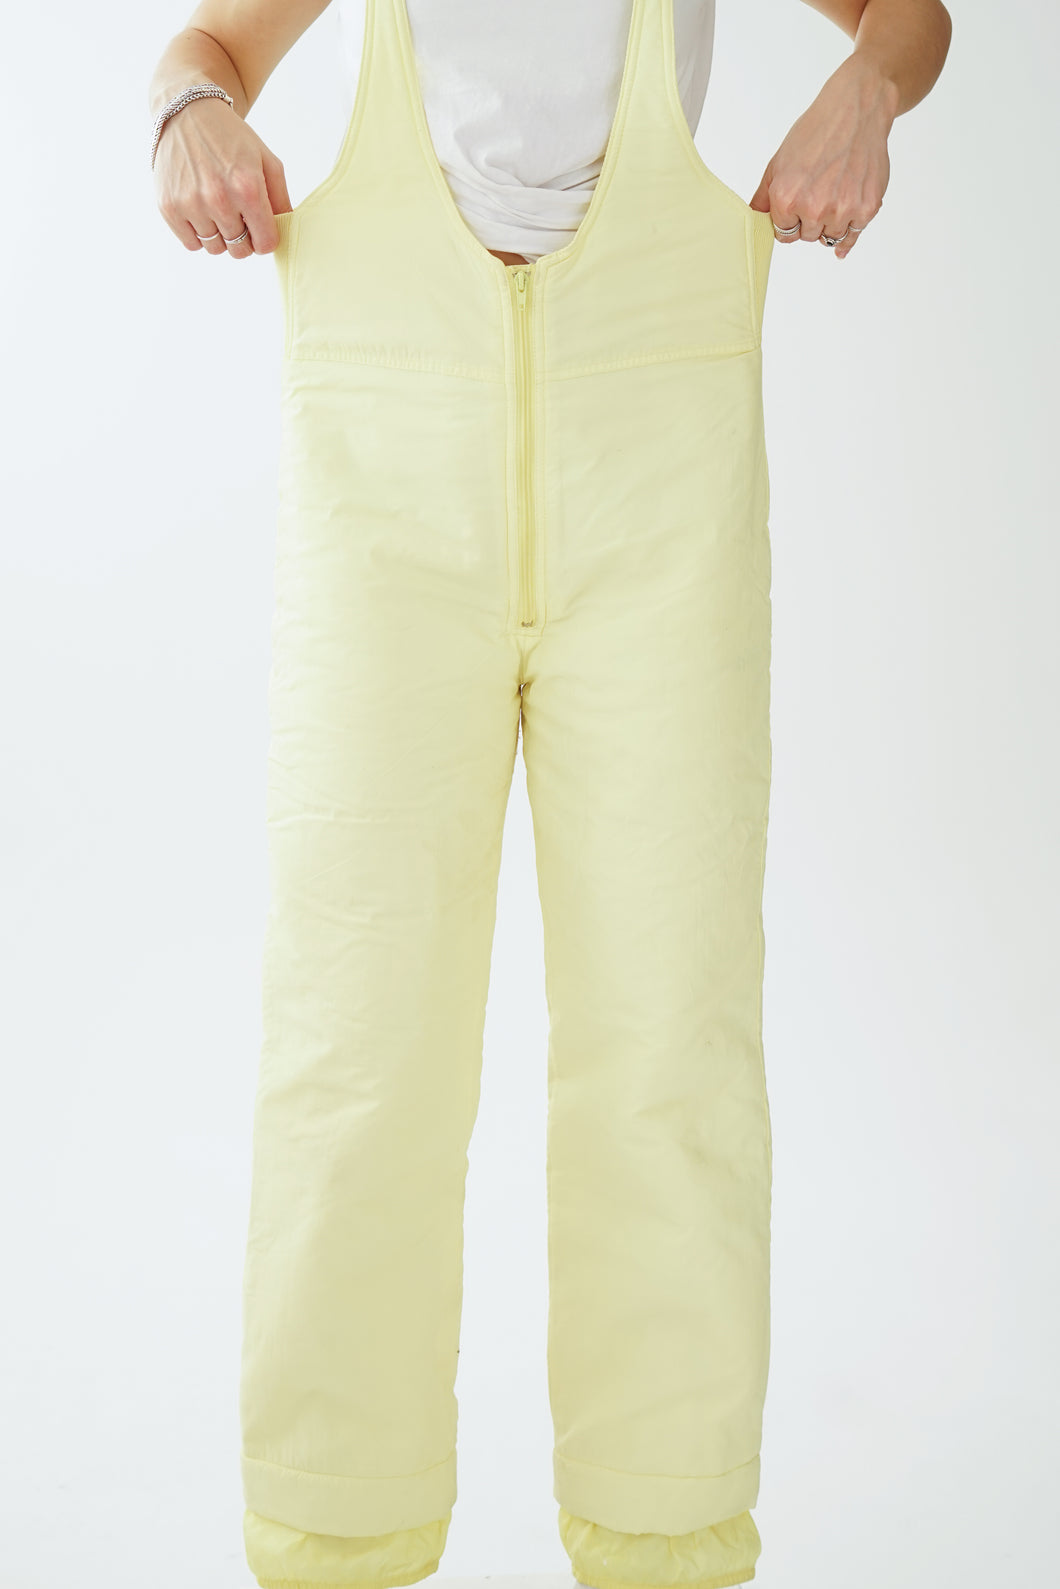 Pantalon de neige salopette jaune pâle Bay Sport taille M pour femme